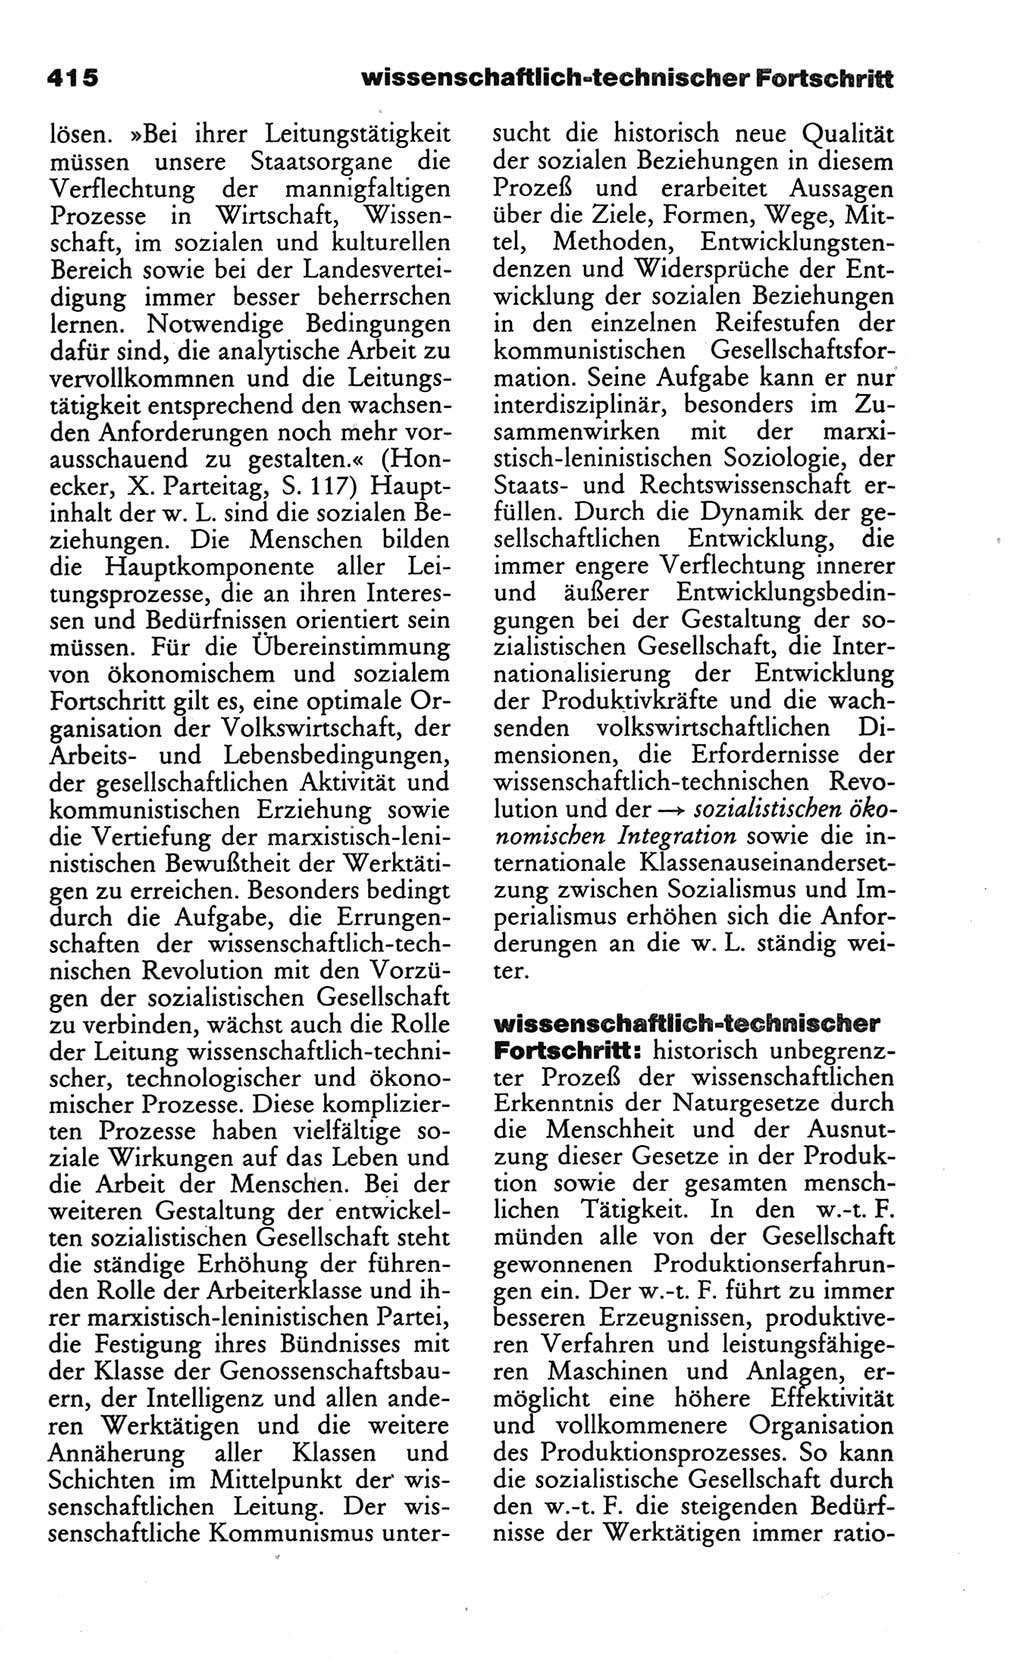 Wörterbuch des wissenschaftlichen Kommunismus [Deutsche Demokratische Republik (DDR)] 1986, Seite 415 (Wb. wiss. Komm. DDR 1986, S. 415)